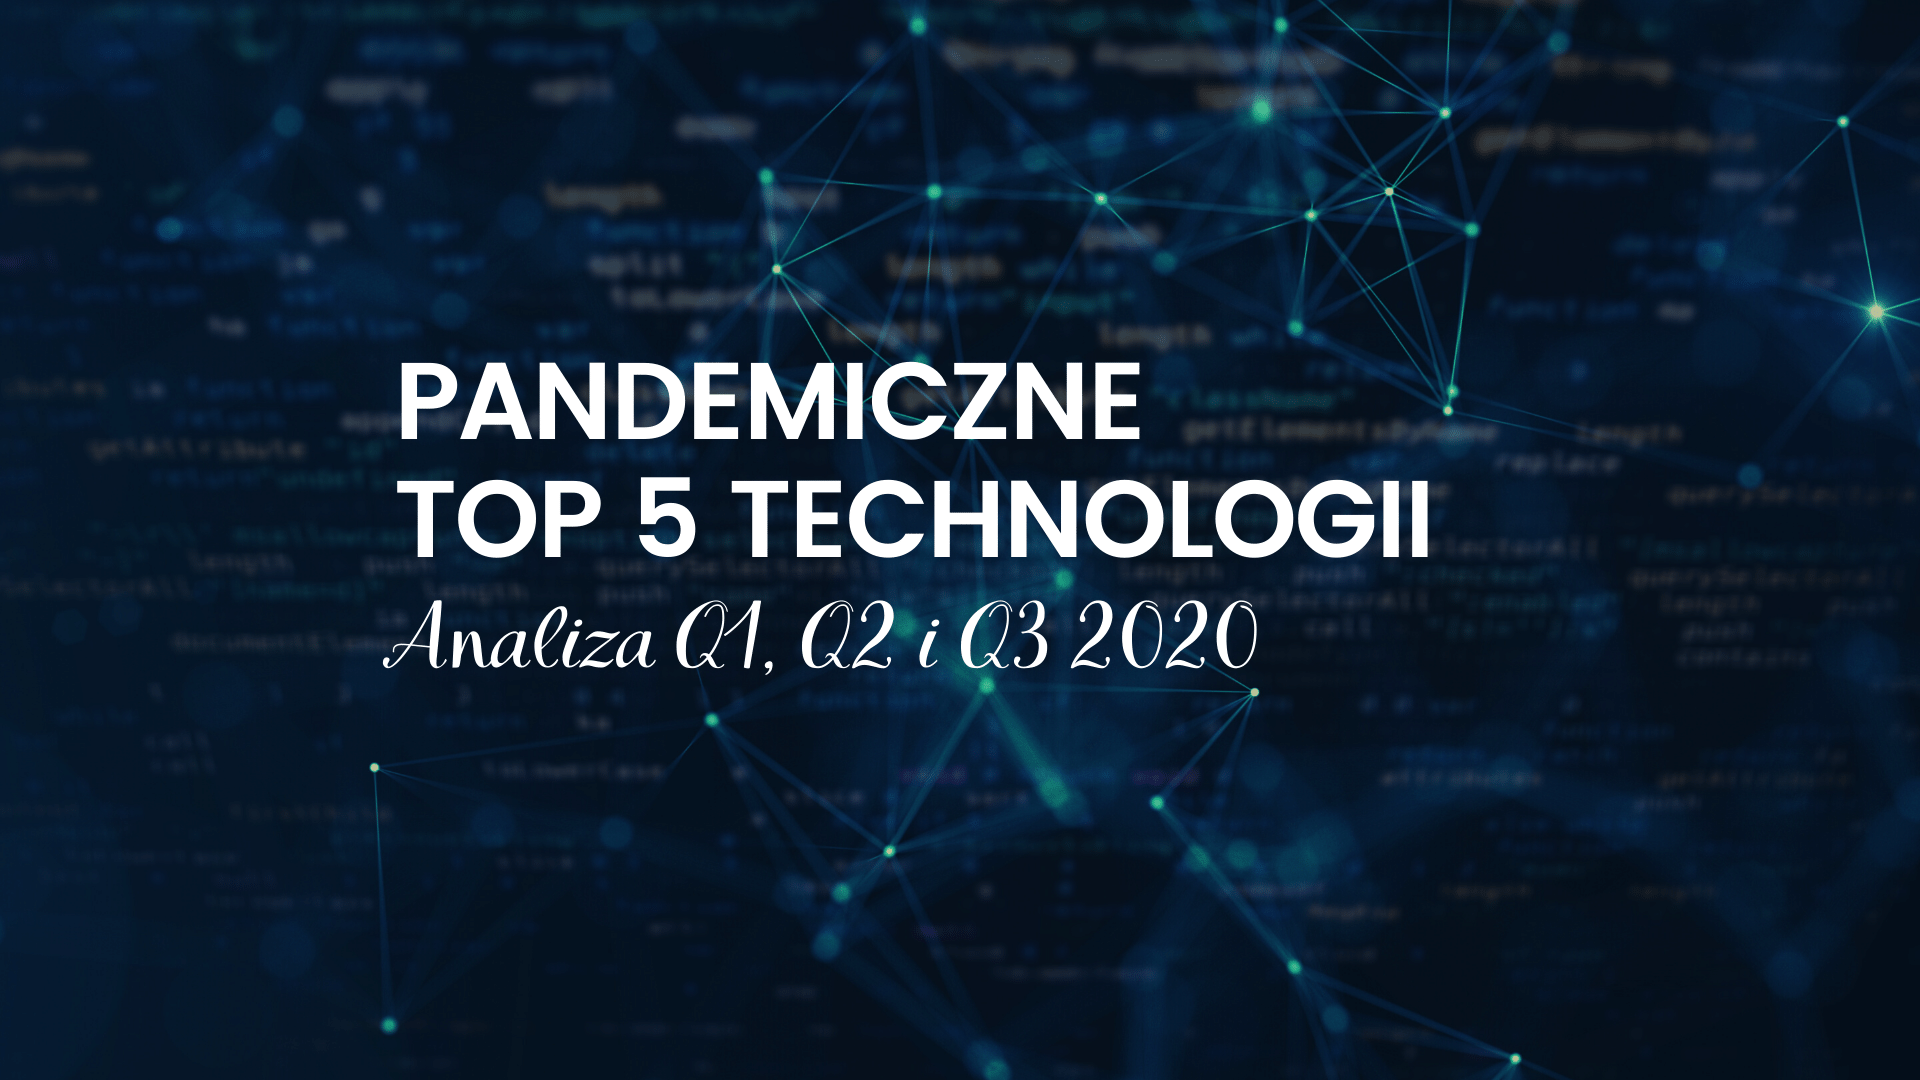 PANDEMICZNE TOP 5 POSZUKIWANYCH TECHNOLOGII W Q1, Q2 I Q3 2020 R.